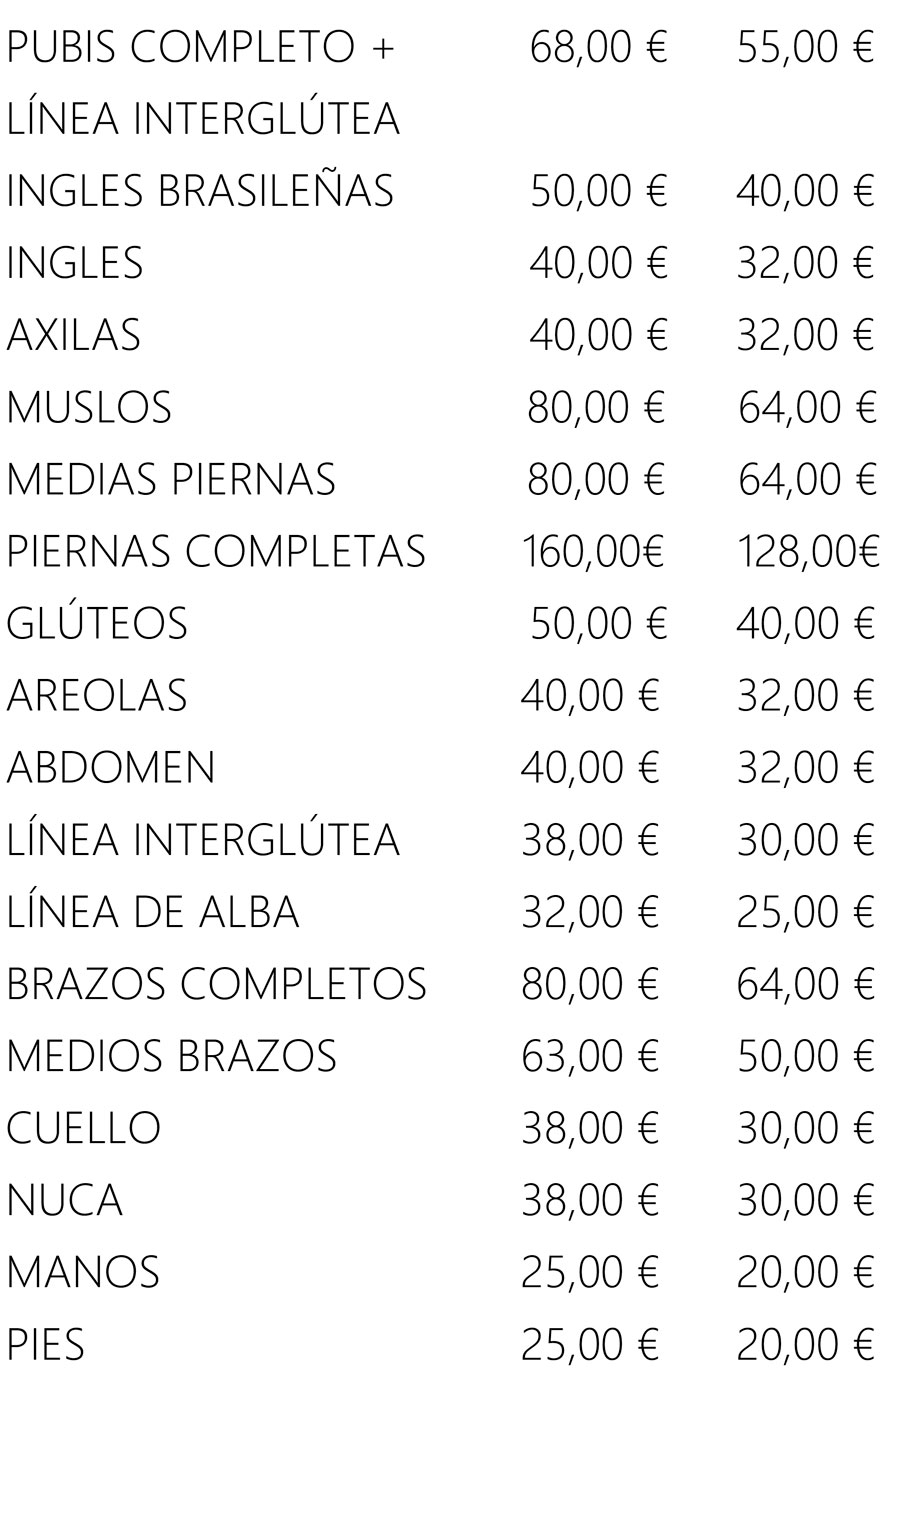 PUBIS COMPLETO +
                LÍNEA INTERGLÚTEA
                68,00 € 55,00 €
                INGLES BRASILEÑAS 50,00 € 40,00 €
                INGLES 40,00 € 32,00 €
                AXILAS 40,00 € 32,00 €
                MUSLOS 80,00 € 64,00 €
                MEDIAS PIERNAS
                PIERNAS COMPLETAS
                80,00 €
                160,00€
                64,00 €
                128,00€
                GLÚTEOS 50,00 € 40,00 €
                AREOLAS 40,00 € 32,00 €
                ABDOMEN 40,00 € 32,00 €
                LÍNEA INTERGLÚTEA 38,00 € 30,00 €
                LÍNEA DE ALBA 32,00 € 25,00 €
                BRAZOS COMPLETOS 80,00 € 64,00 €
                MEDIOS BRAZOS 63,00 € 50,00 €
                CUELLO 38,00 € 30,00 €
                NUCA 38,00 € 30,00 €
                MANOS 25,00 € 20,00 €
                PIES 25,00 € 20,00 €